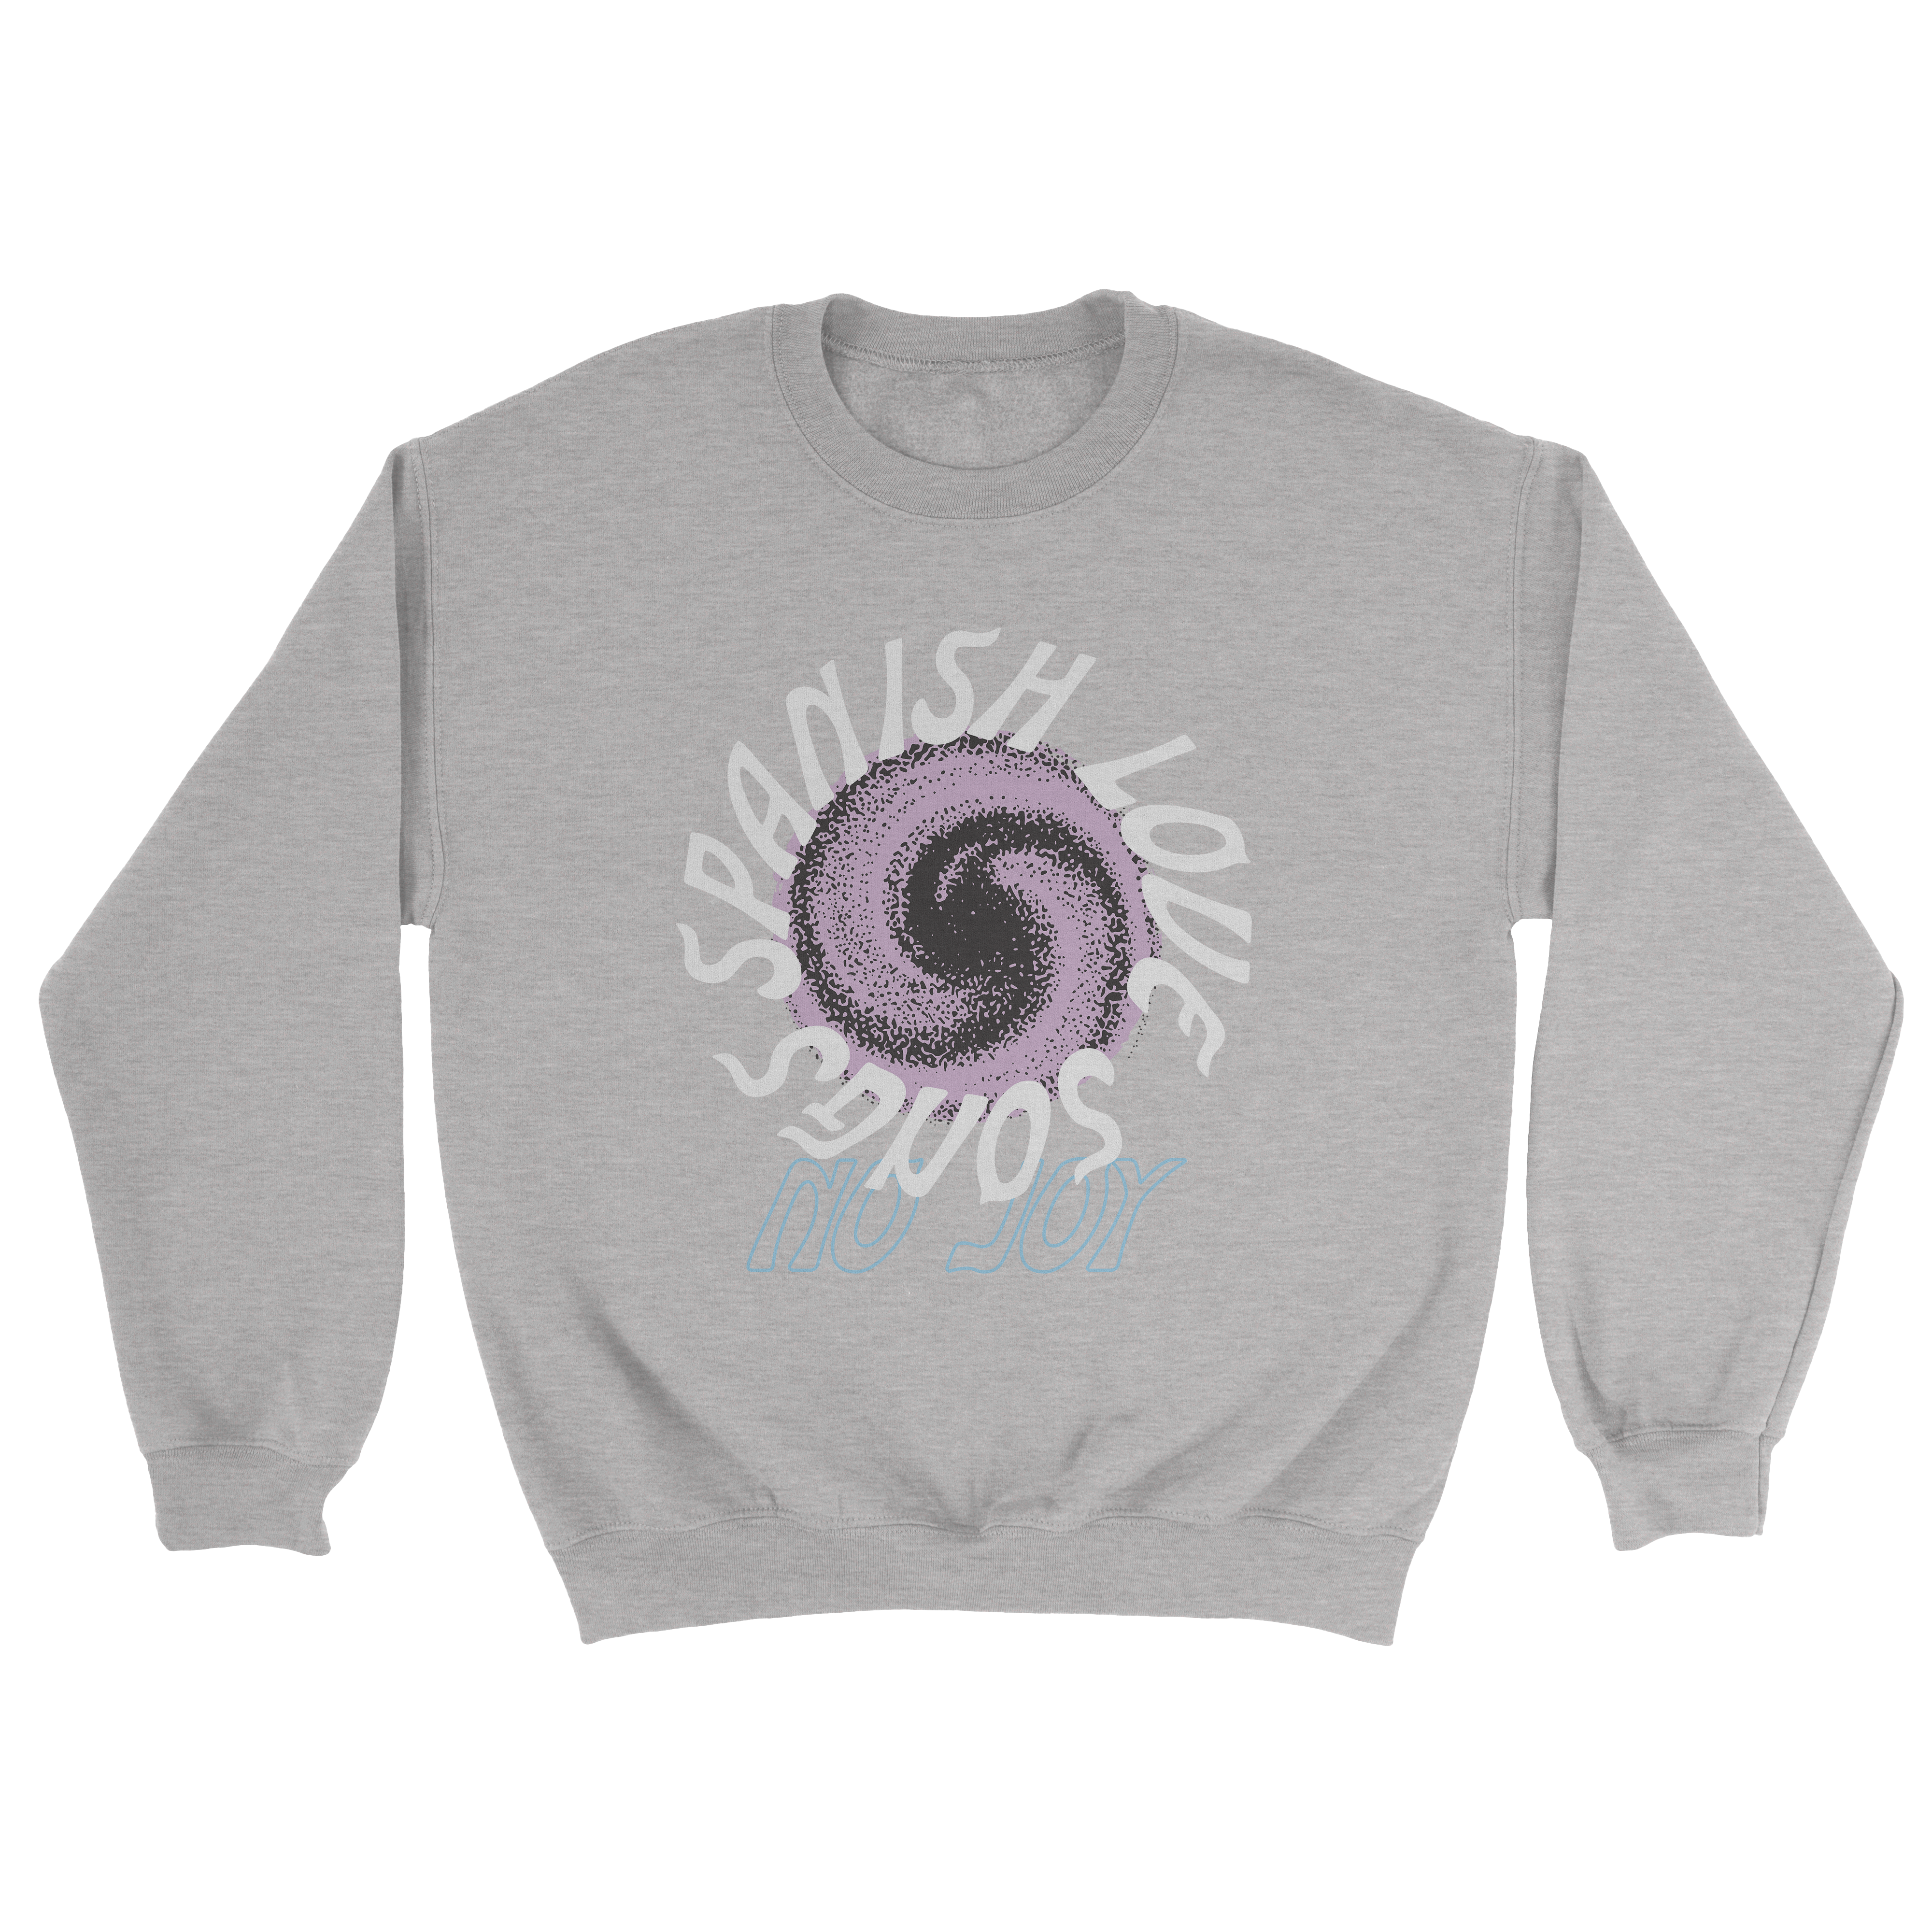 Swirl Crewneck Sweatshirt